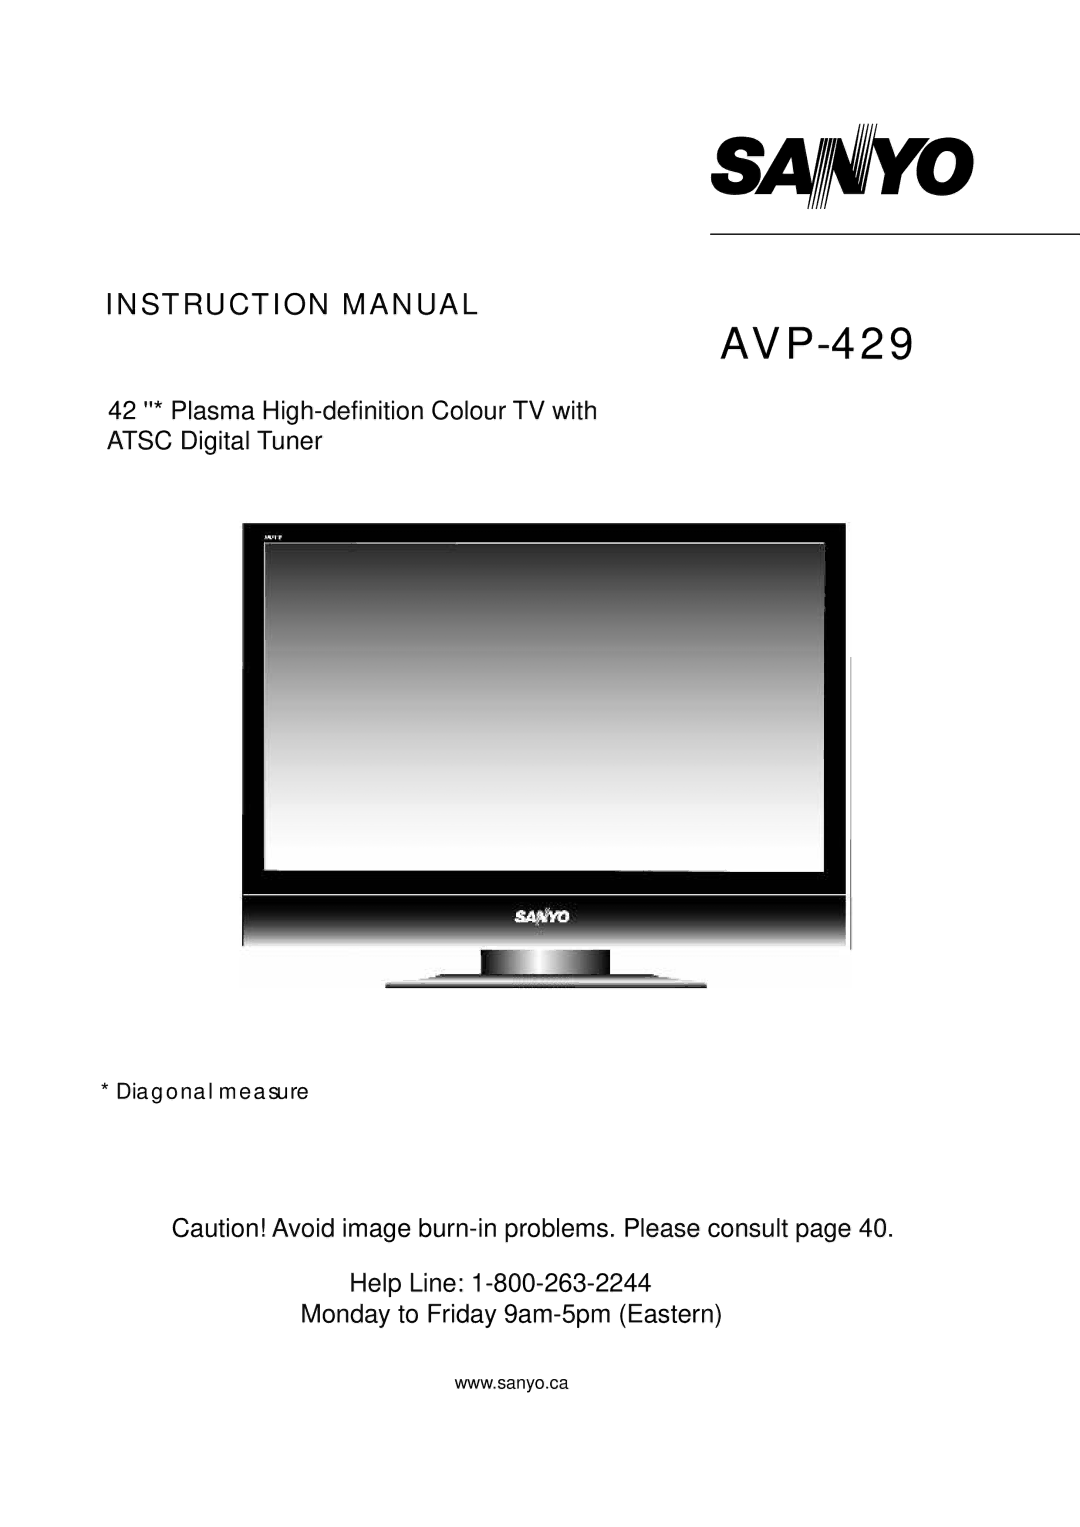 Sanyo AVP-429 instruction manual 